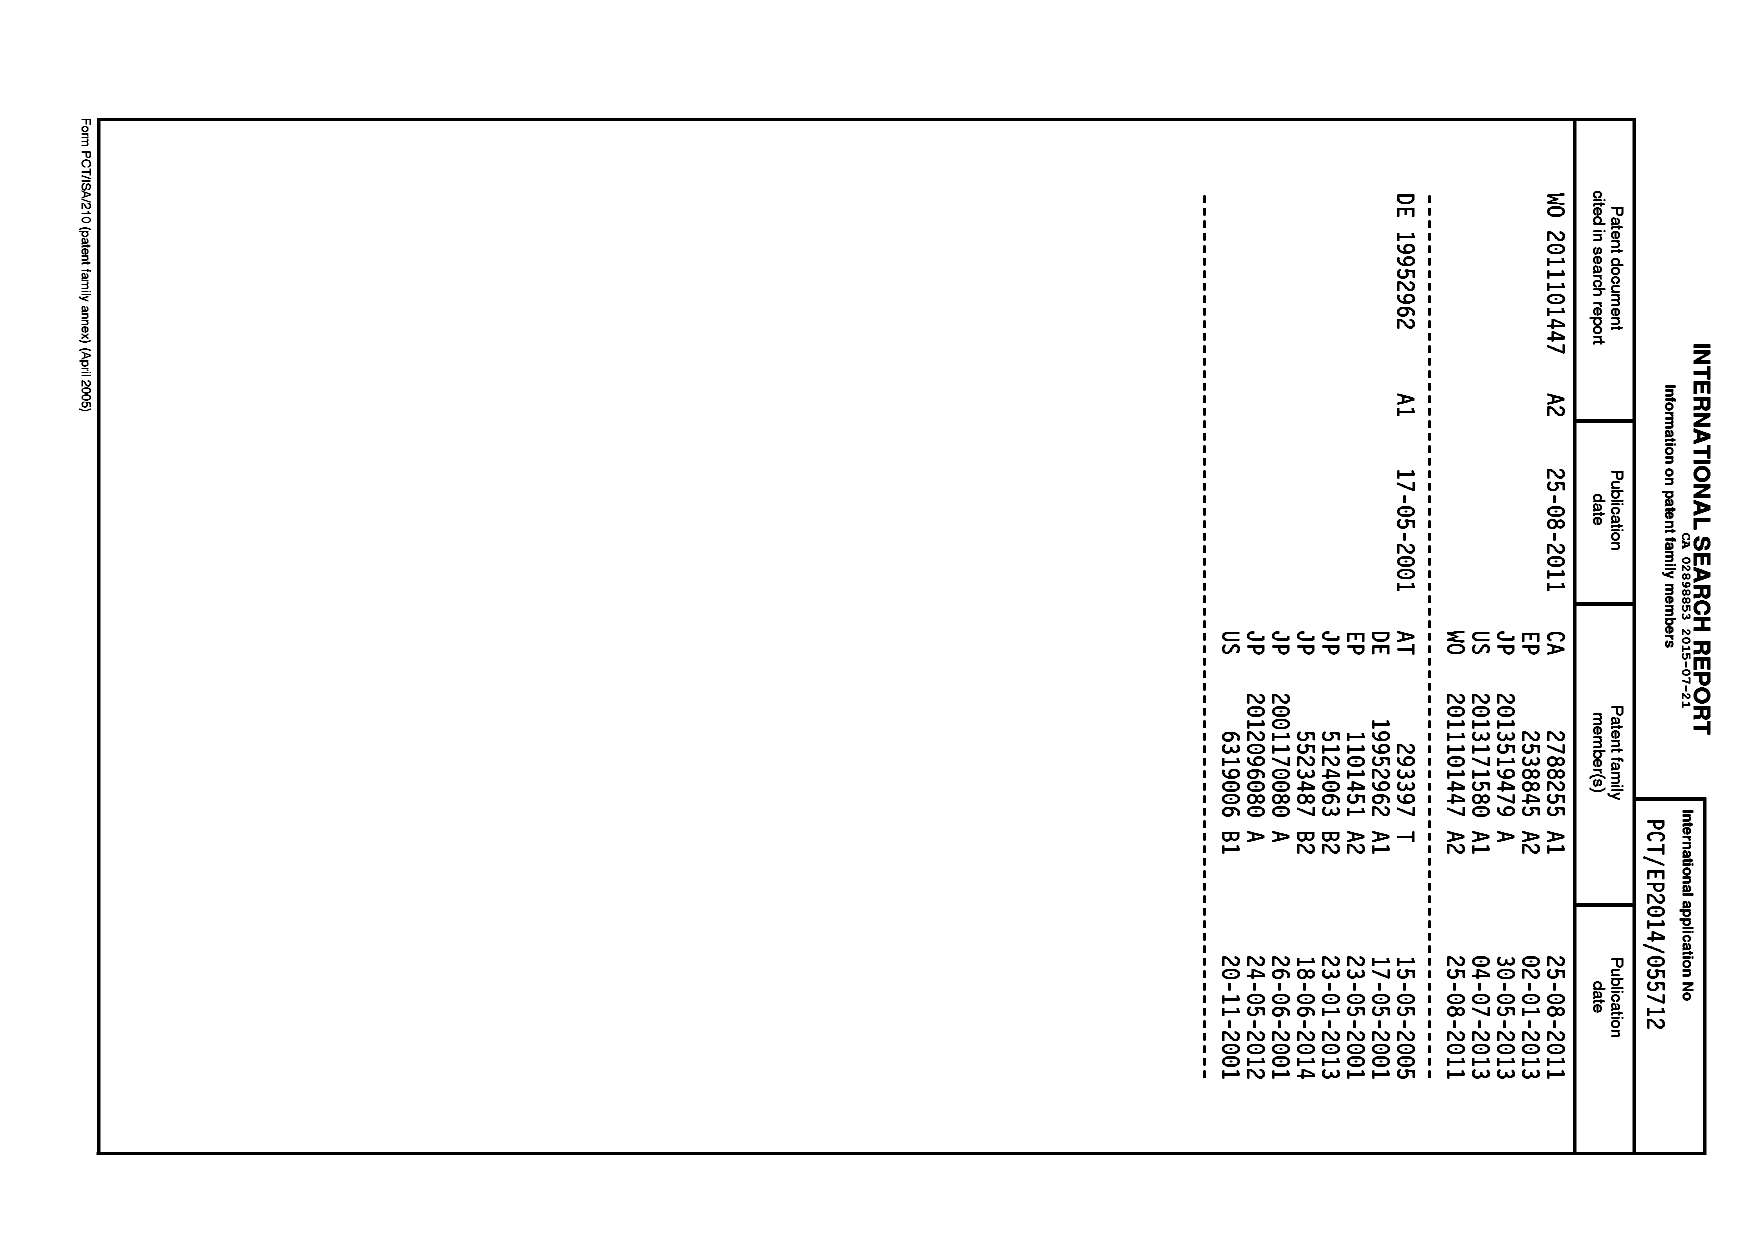 Document de brevet canadien 2898853. Rapport de recherche internationale 20141221. Image 1 de 1